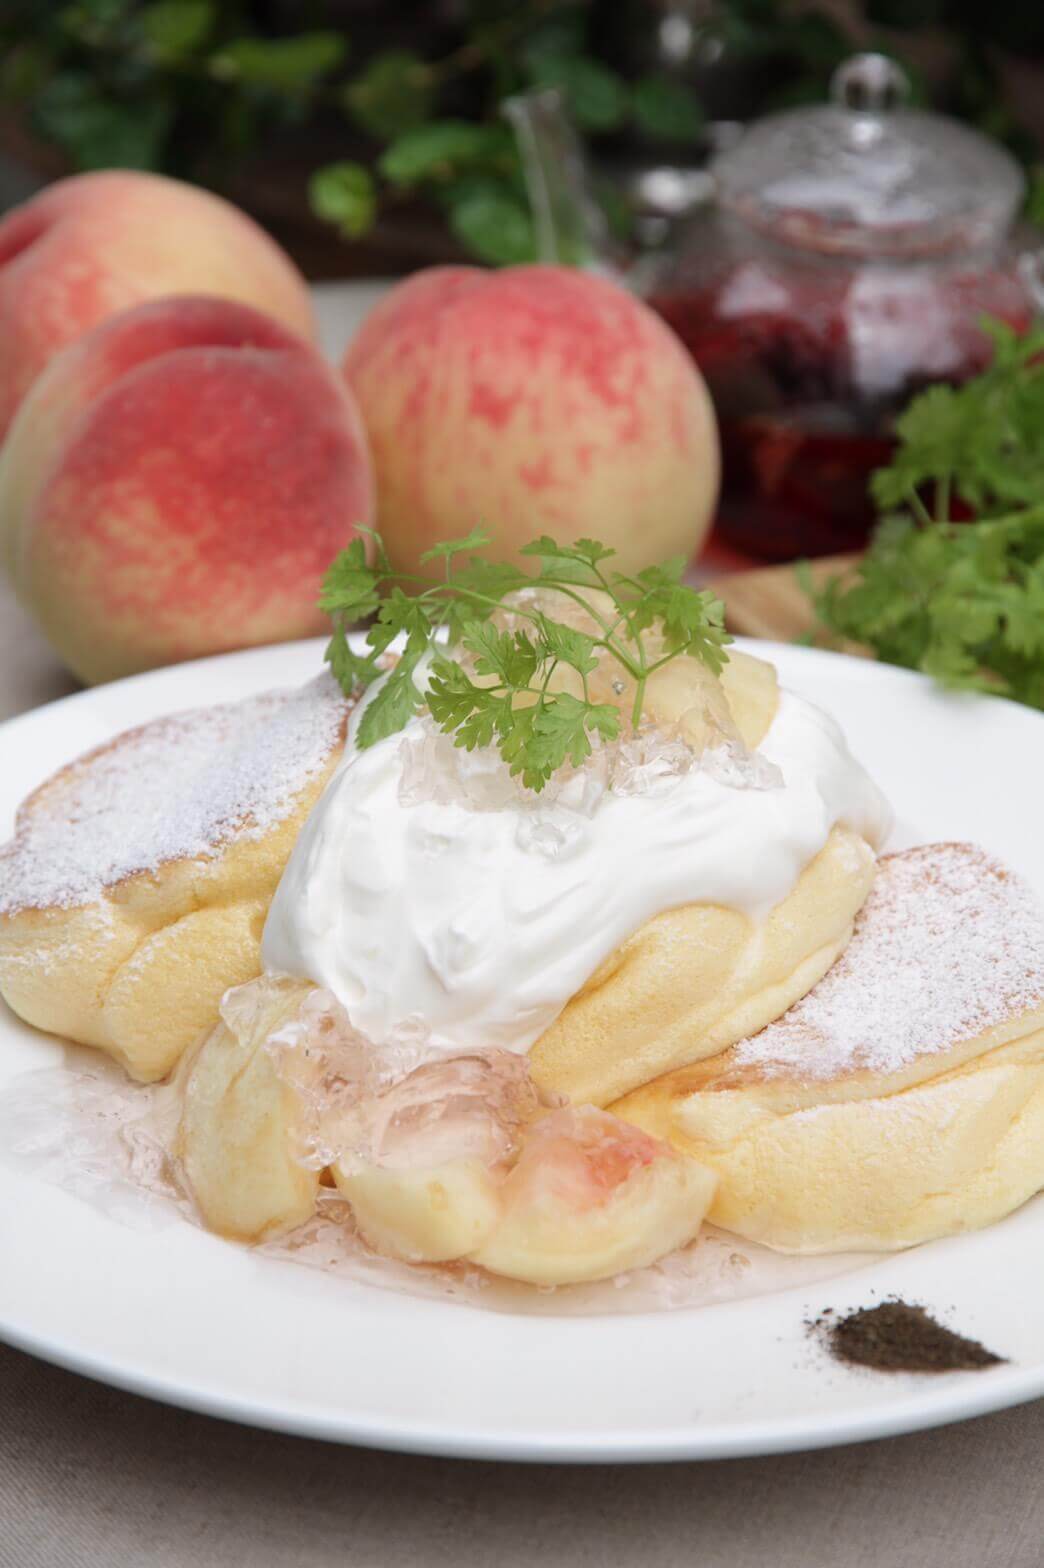 パンケーキ専門店 幸せのパンケーキの『国産白桃のローズヒップピーチパンケーキ』